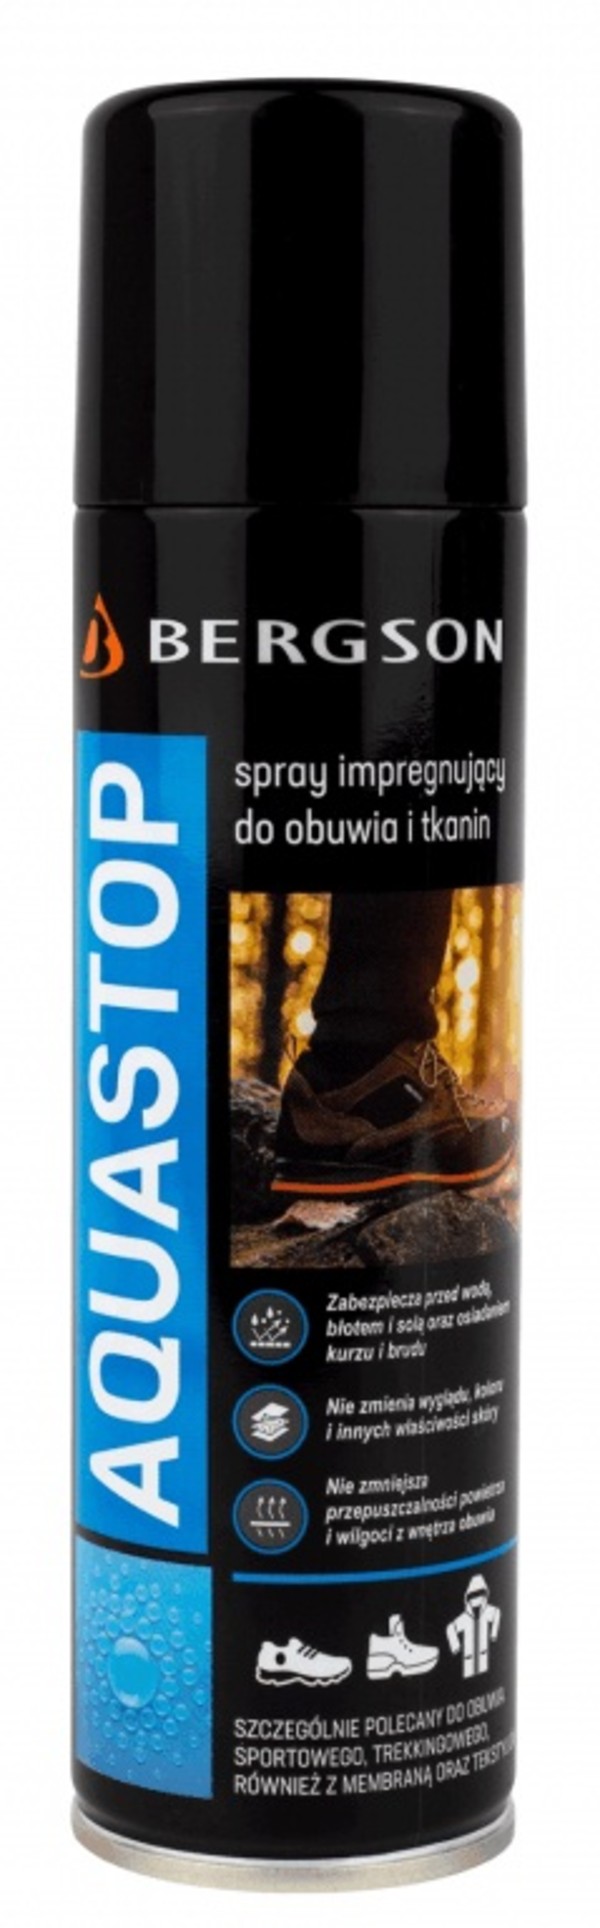 Aquastop Spray zabezpieczający obuwie